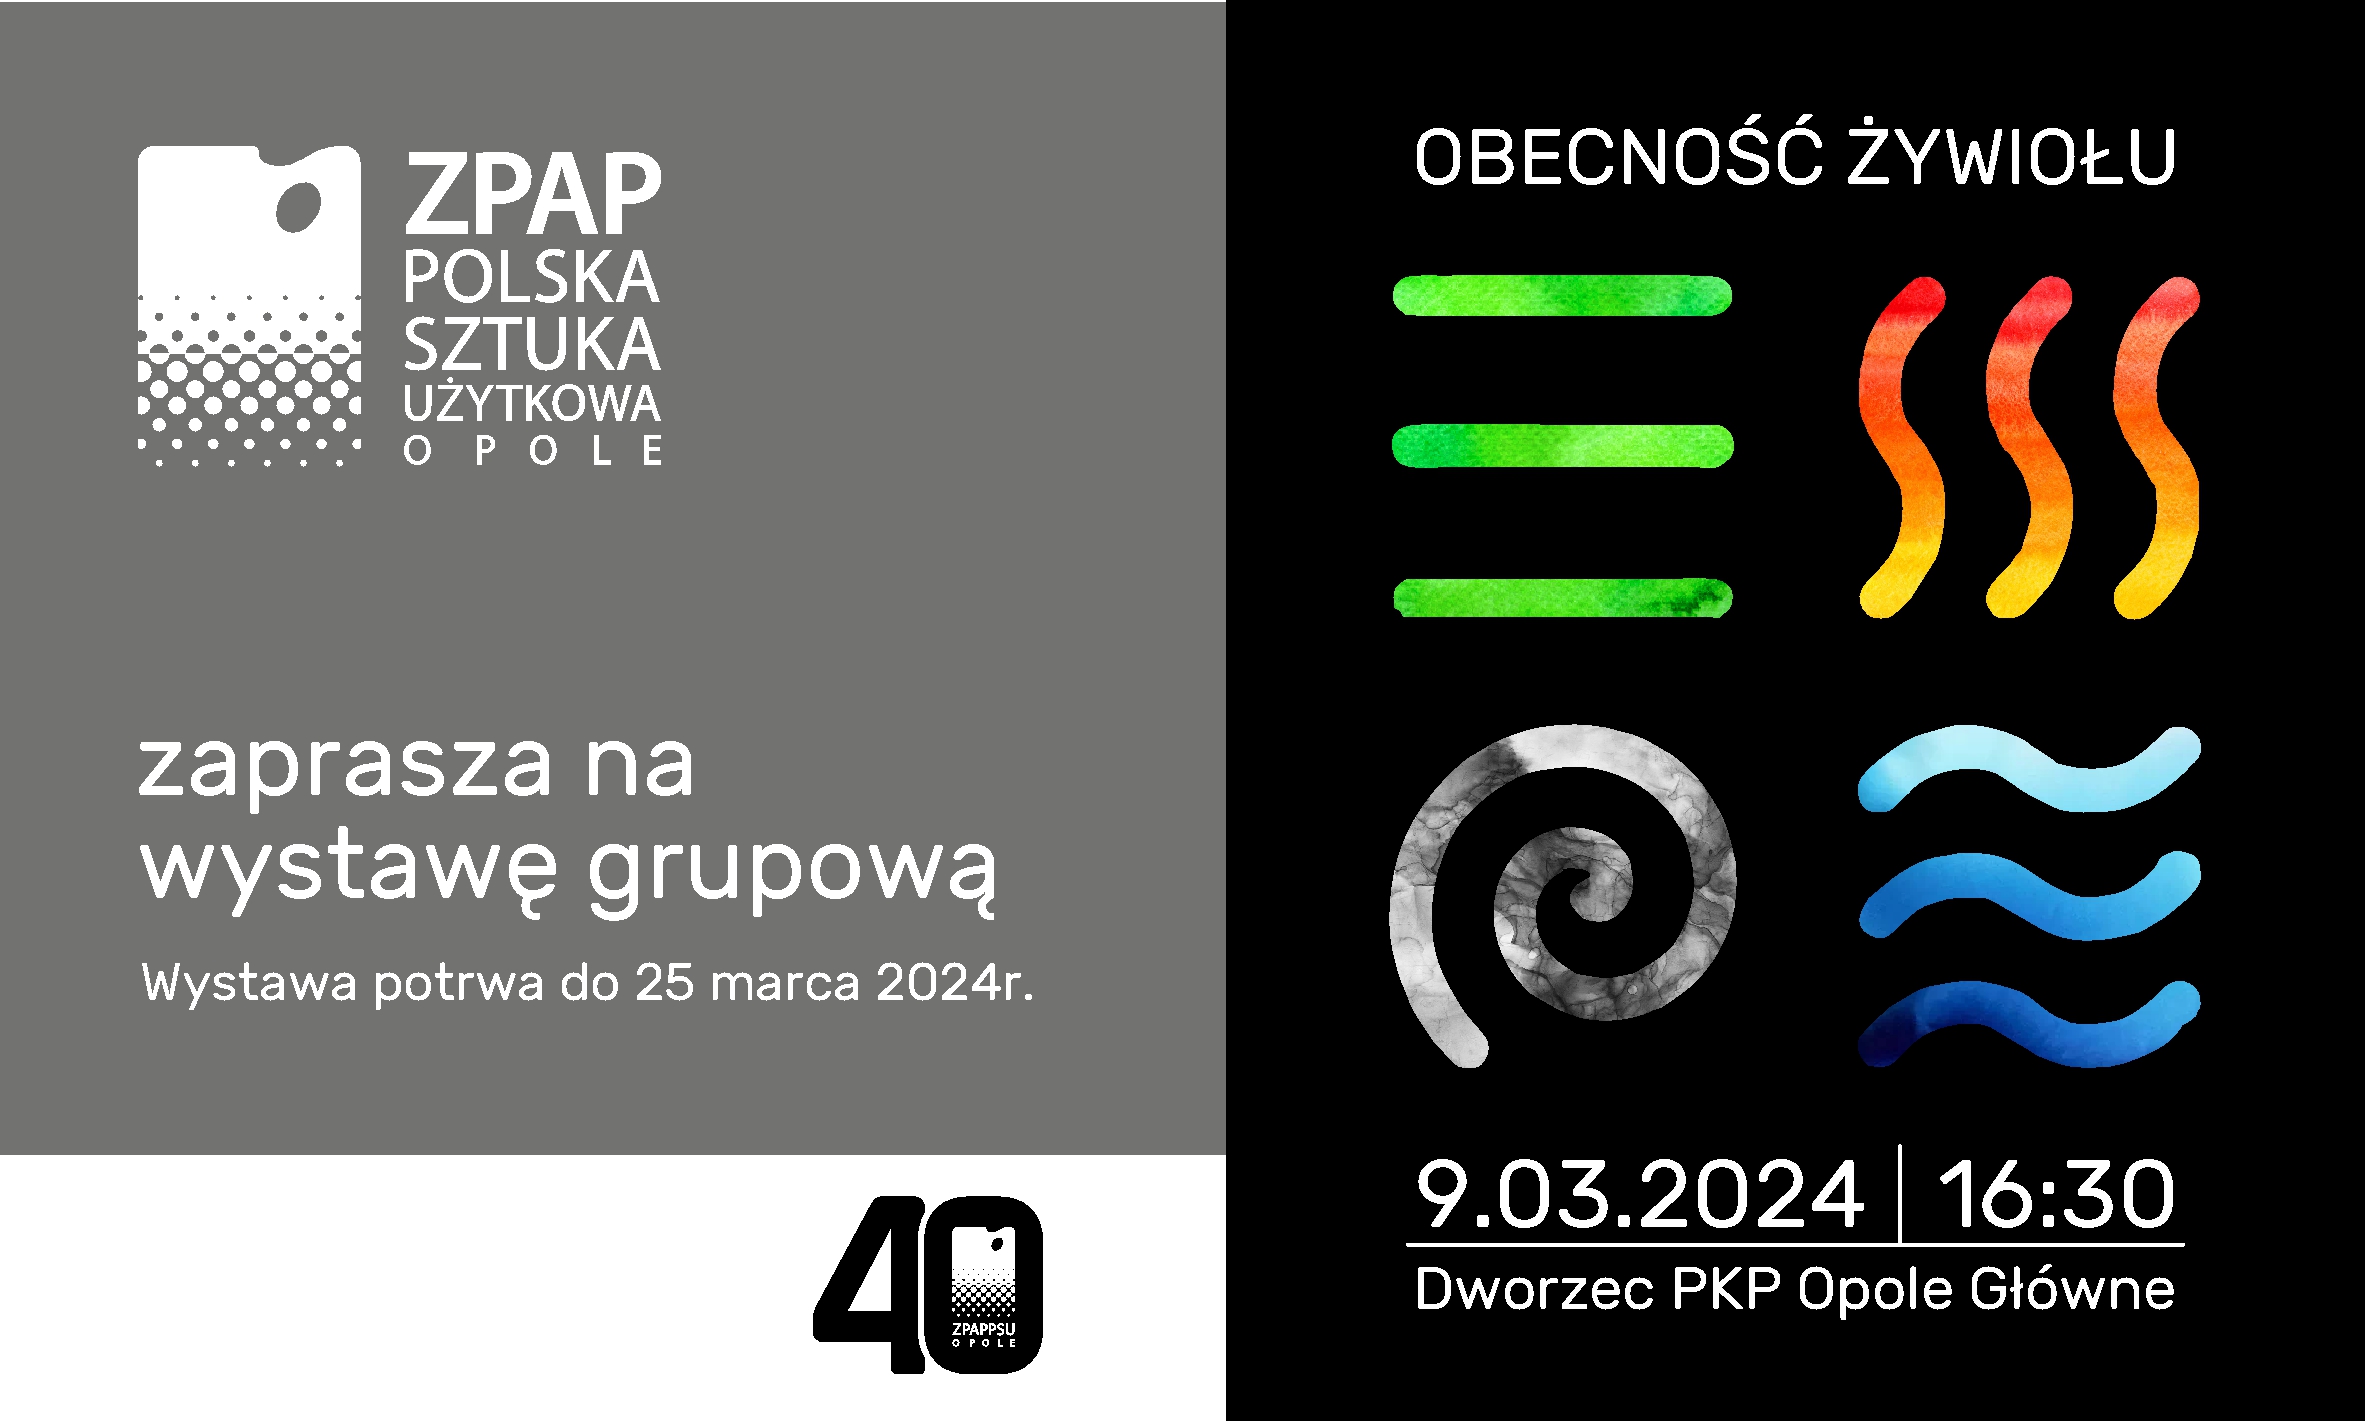 Zapraszamy | Opole | 9.03.2024 | 16:30